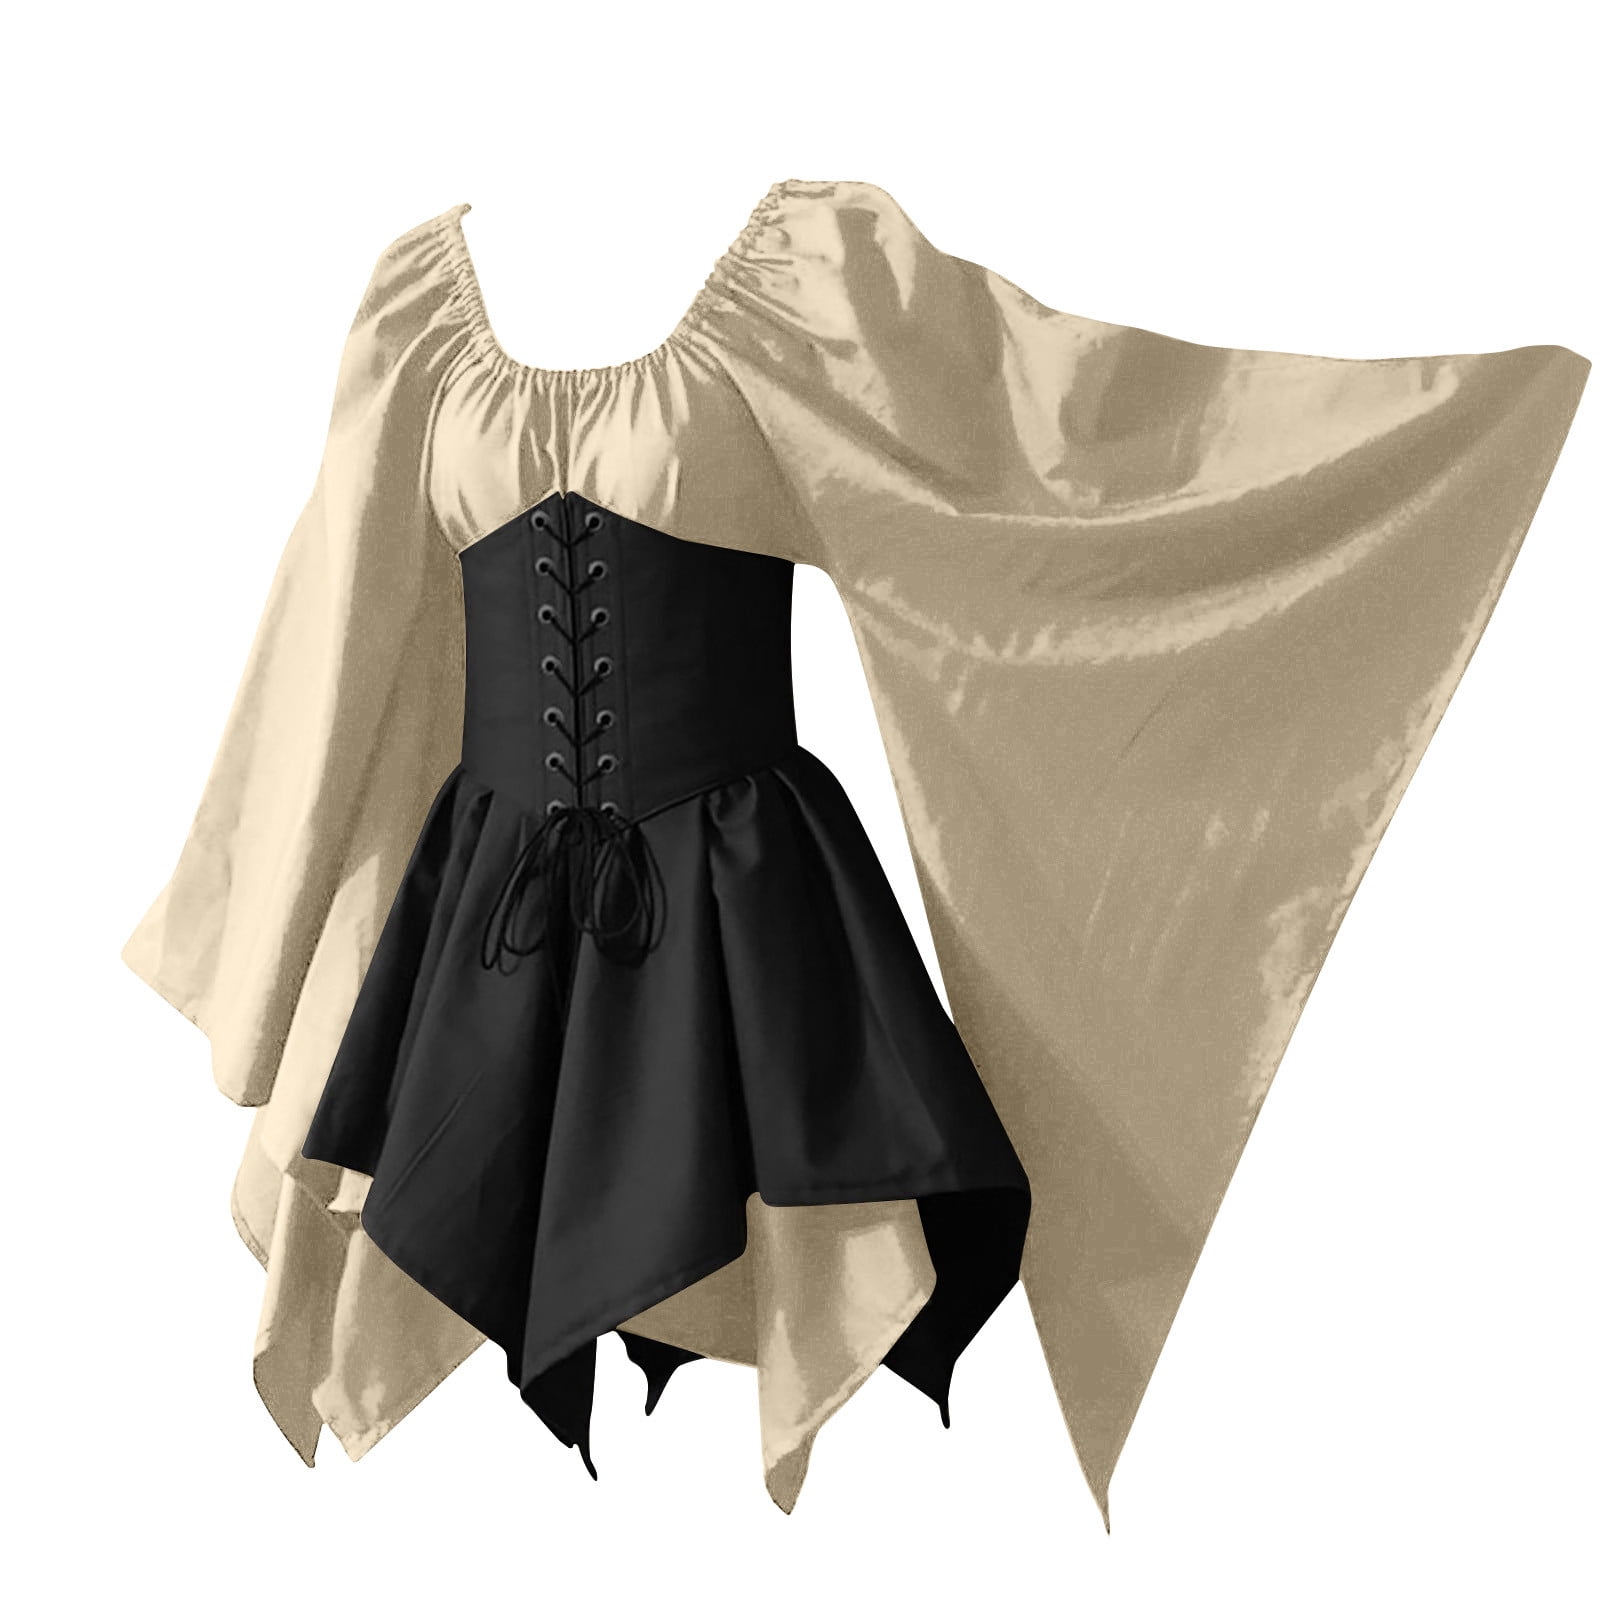 RYRJJ Women's Retro Medieval Renaissance Costume Dresses Plus Size